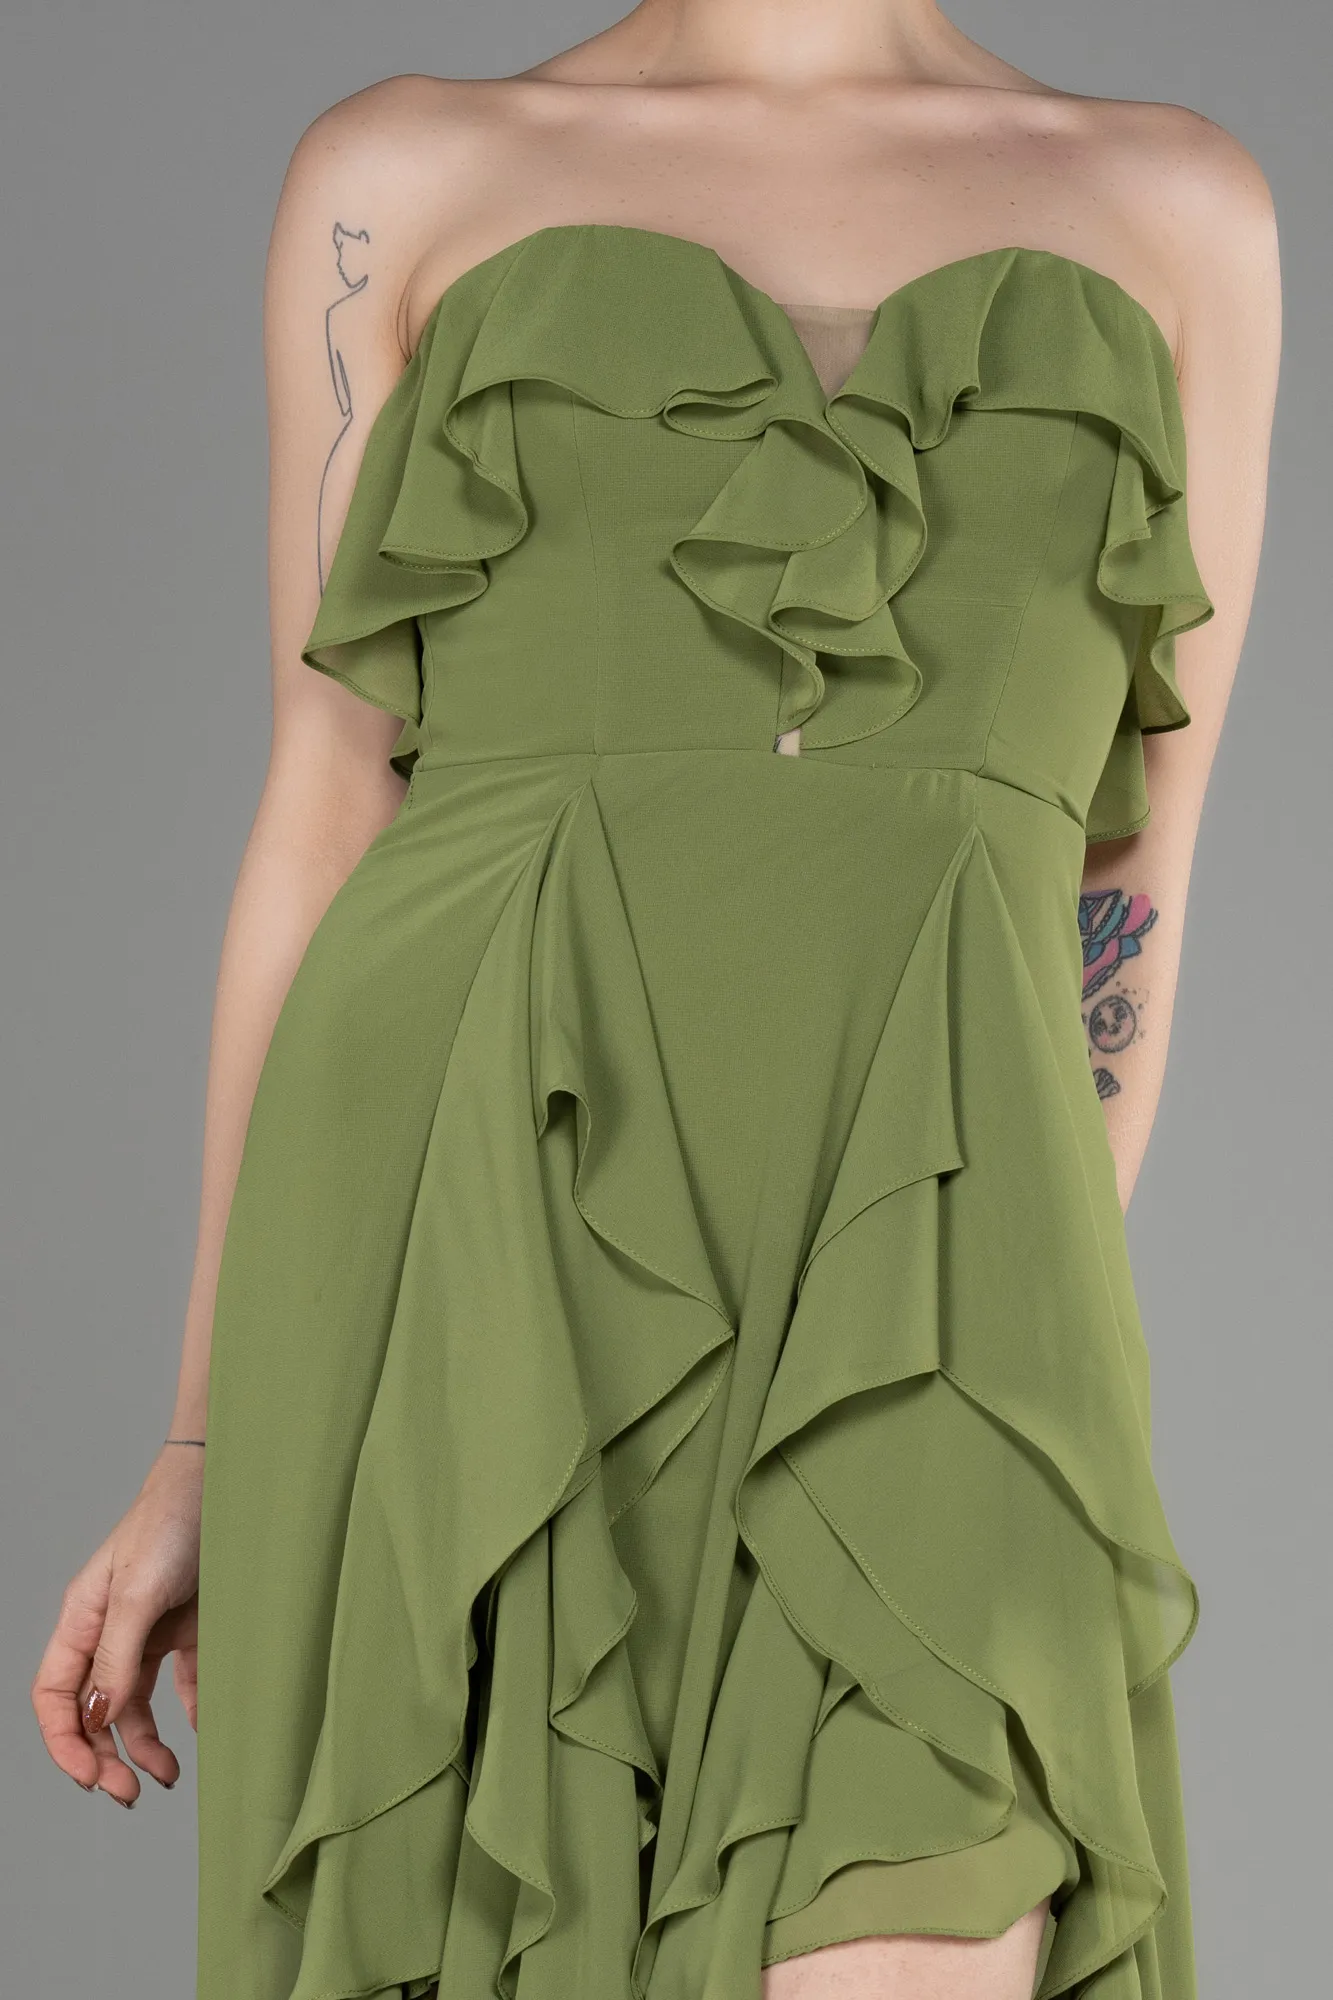 Pistachio Green-Strapless Long Chiffon Prom Dress ABU3838